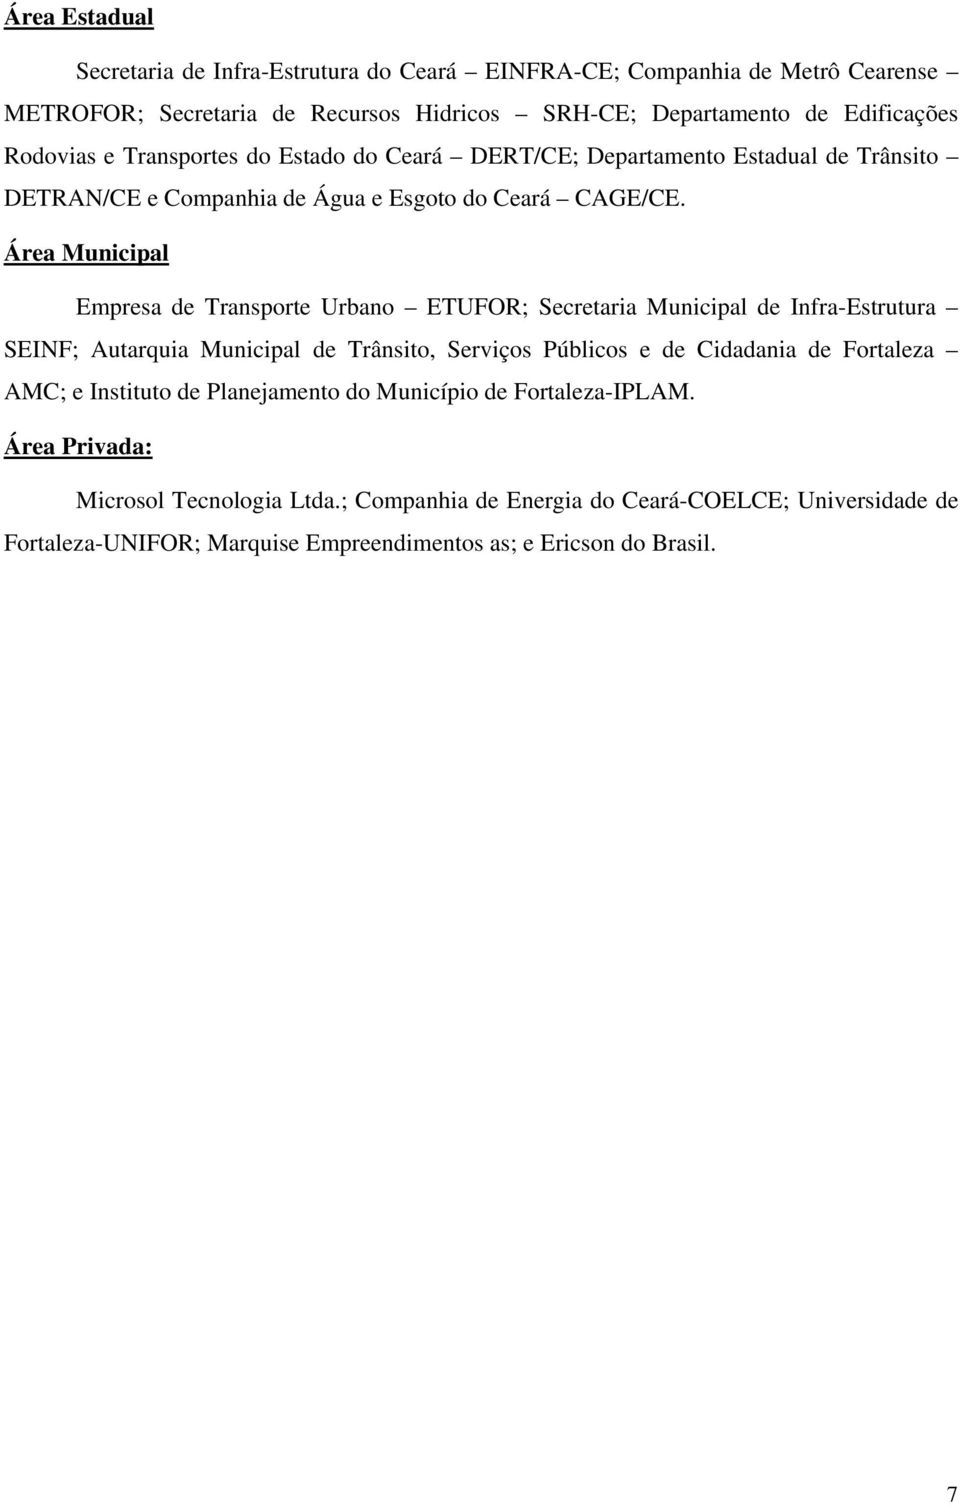 Área Municipal Empresa de Transporte Urbano ETUFOR; Secretaria Municipal de Infra-Estrutura SEINF; Autarquia Municipal de Trânsito, Serviços Públicos e de Cidadania de Fortaleza